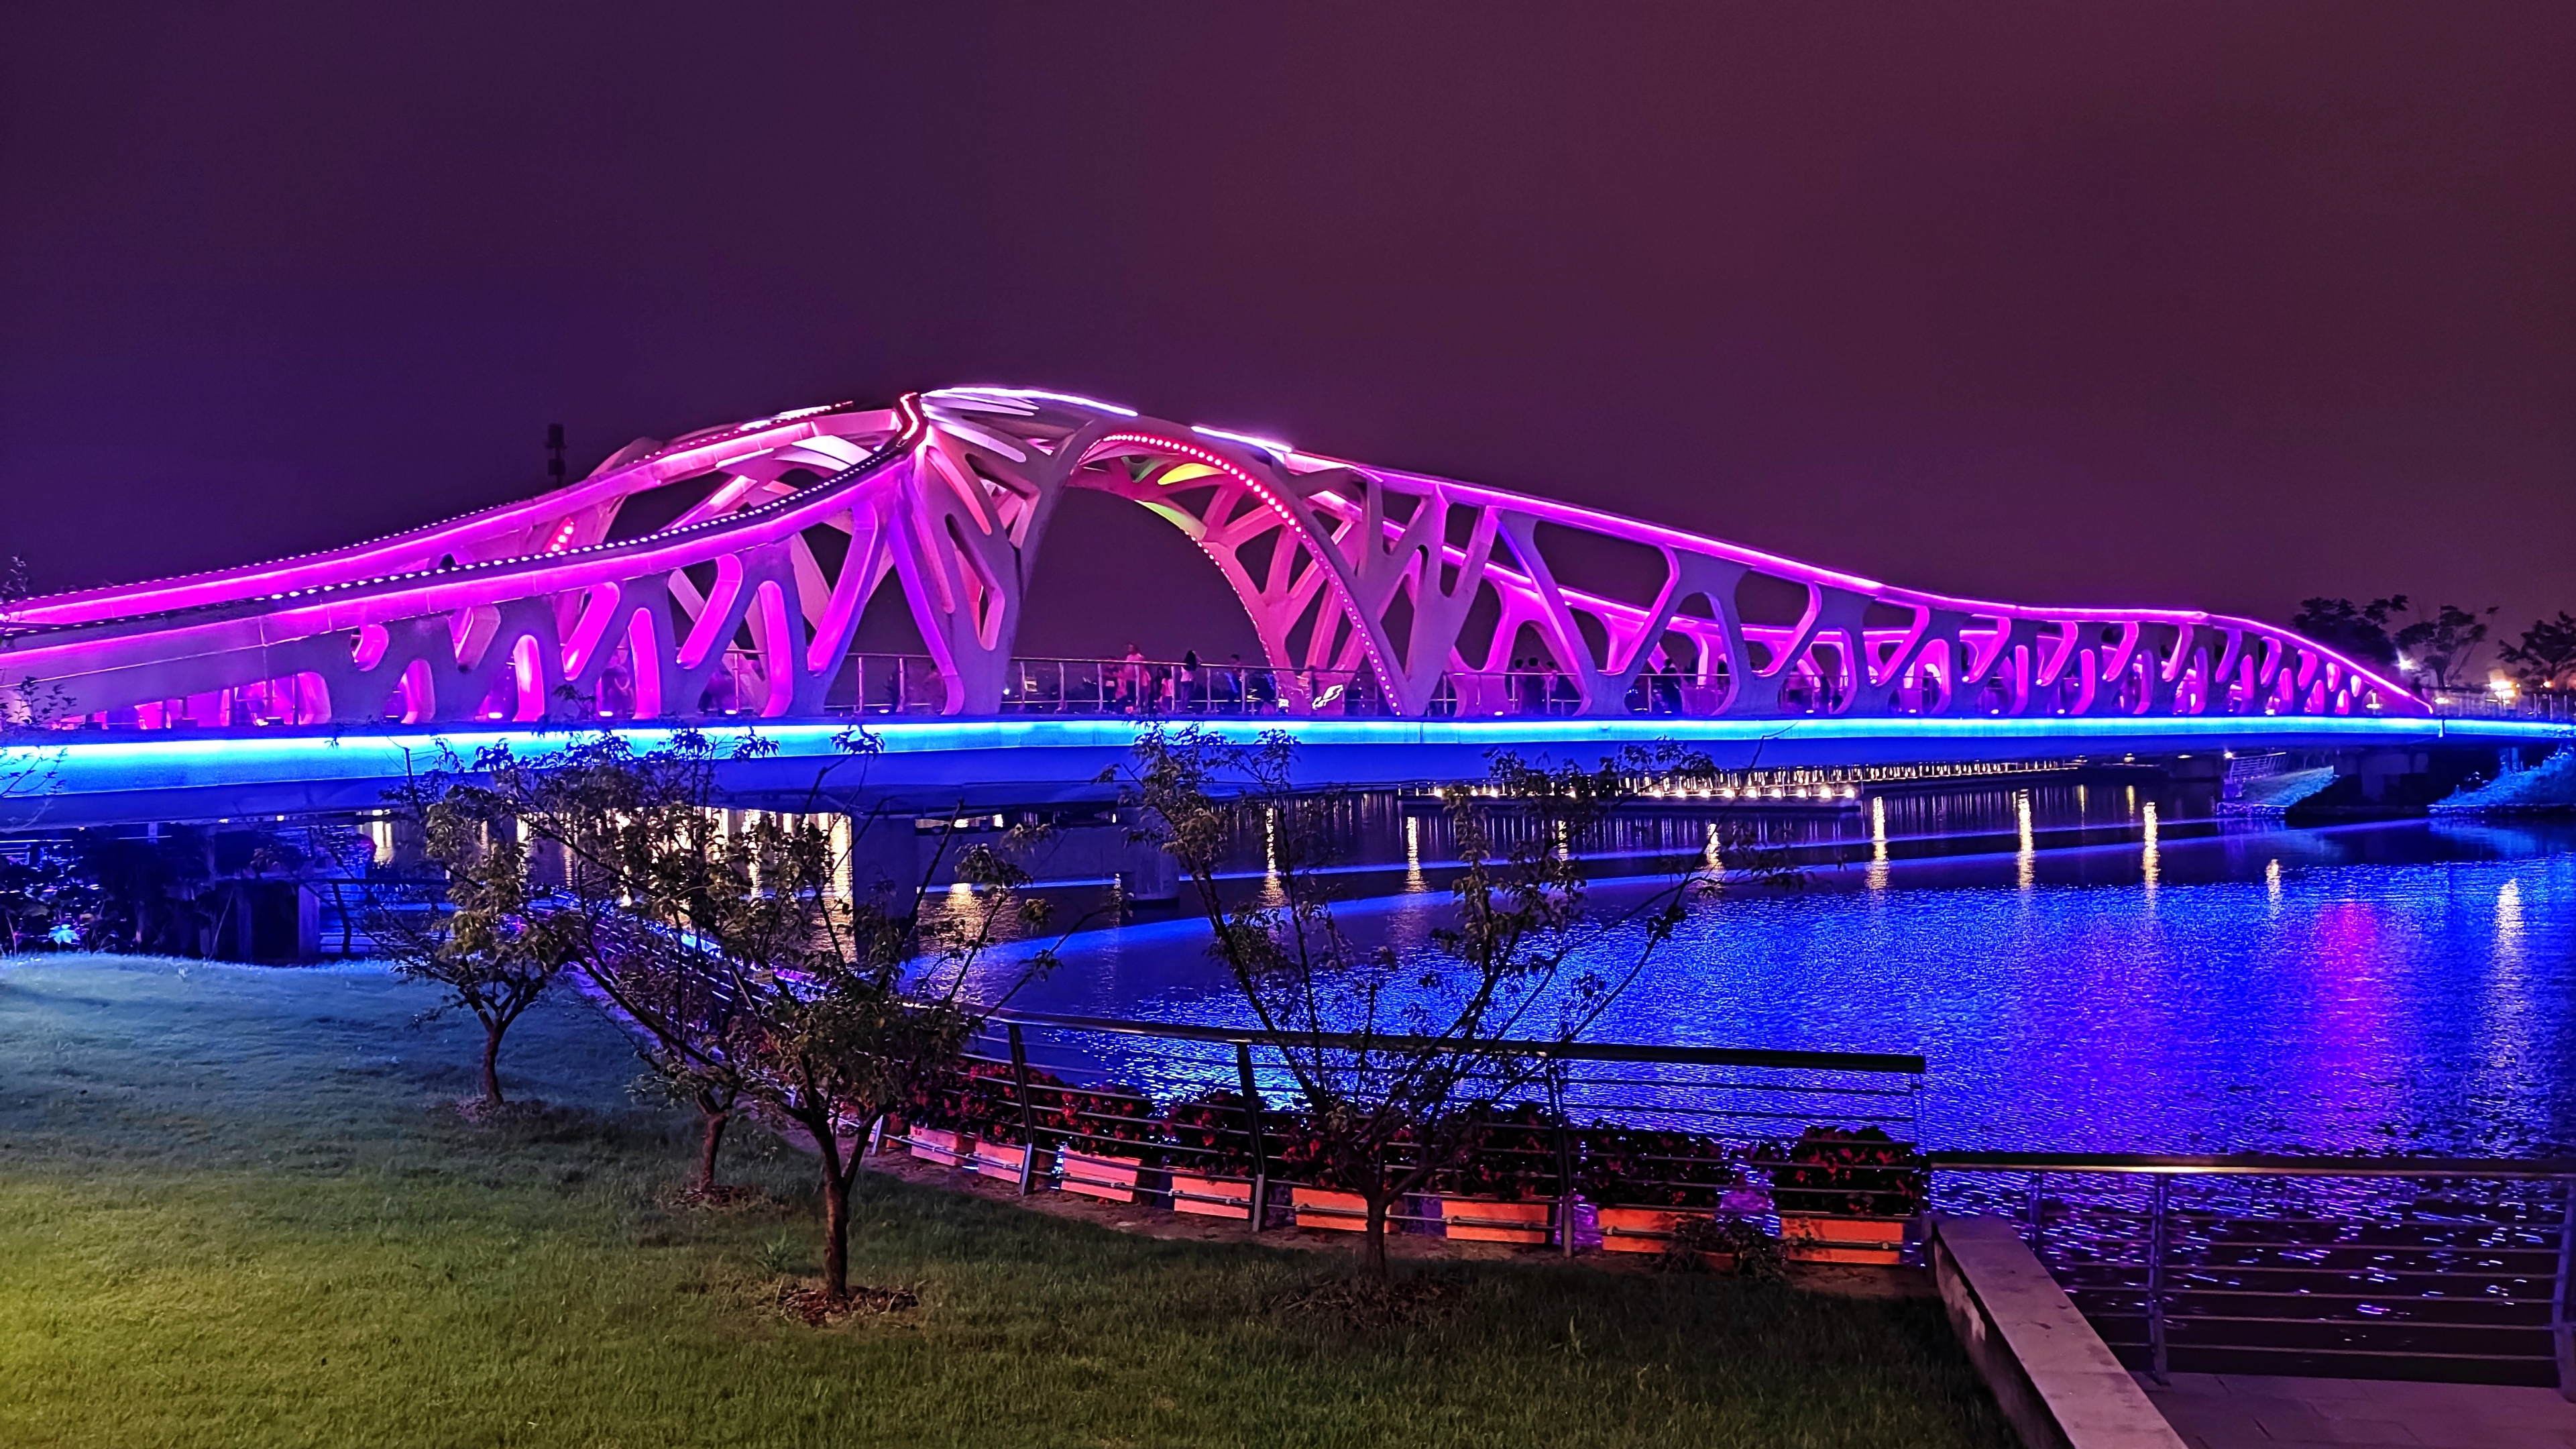 《青浦彩虹桥》 摄影:宋家华(山东青岛)